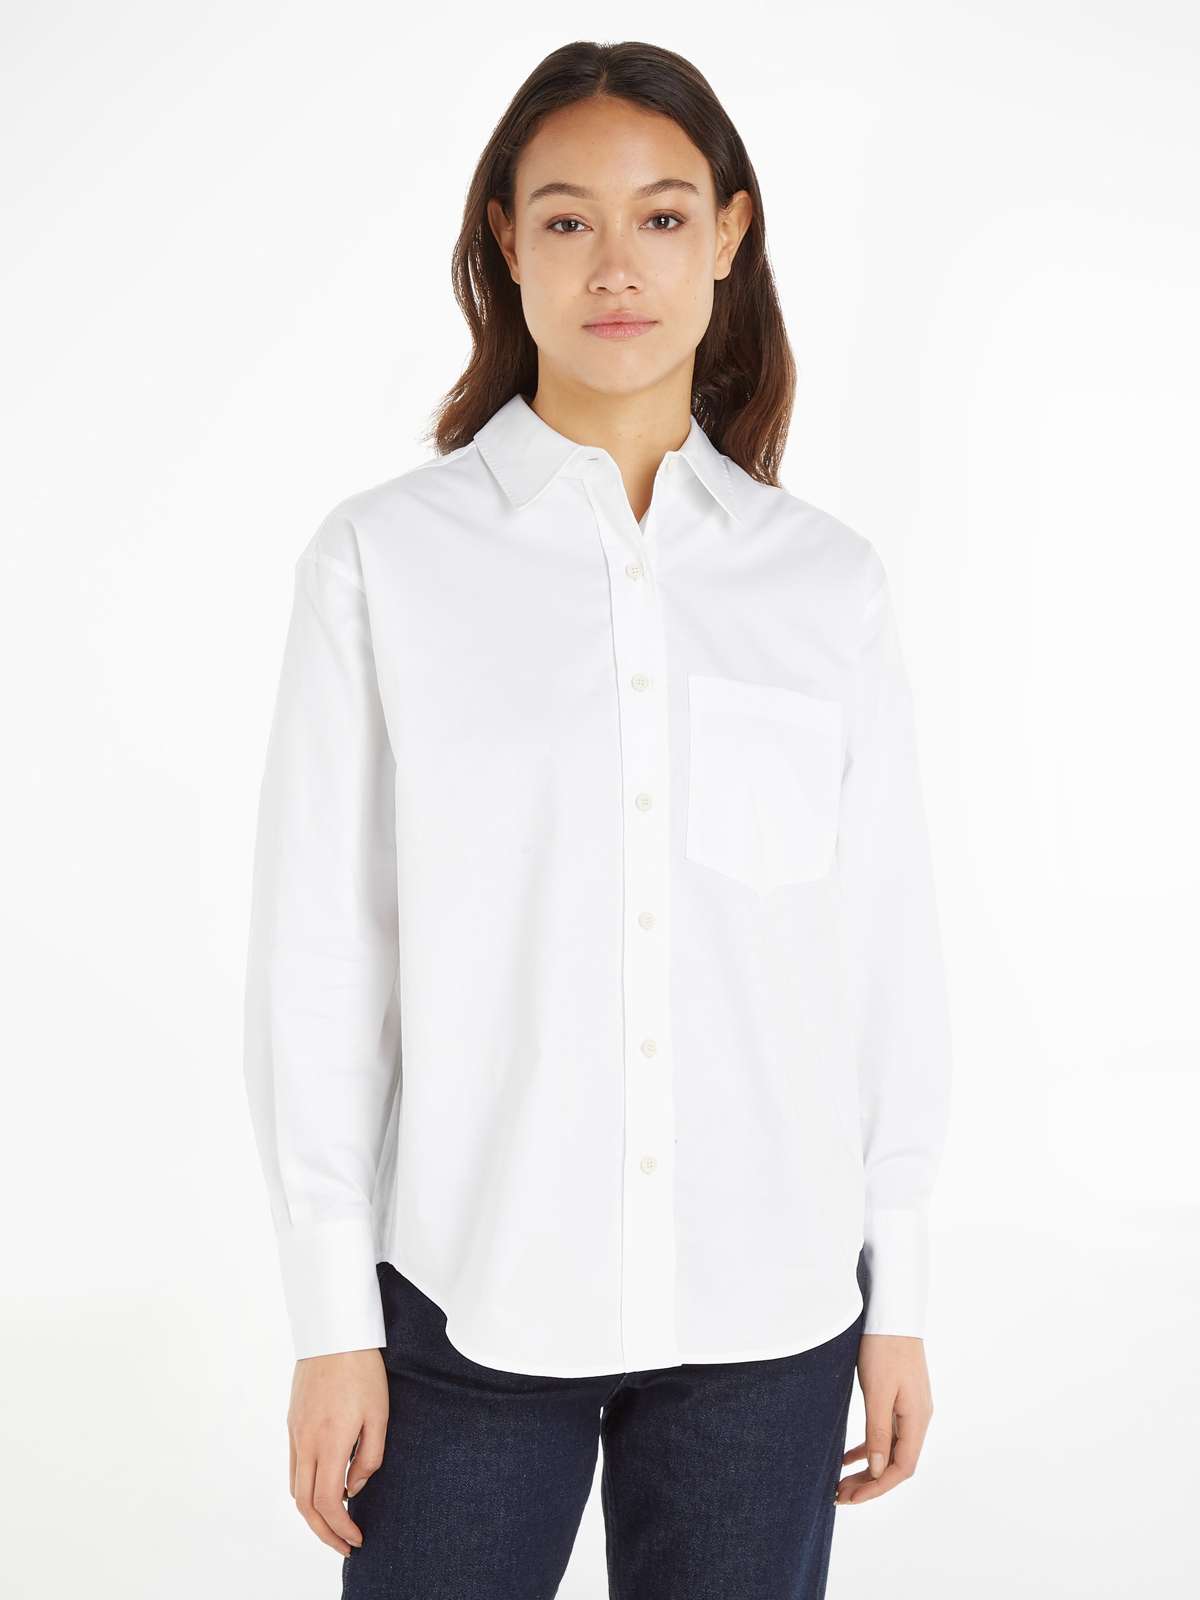 Блузка-рубашка с планкой на пуговицах во всю длину